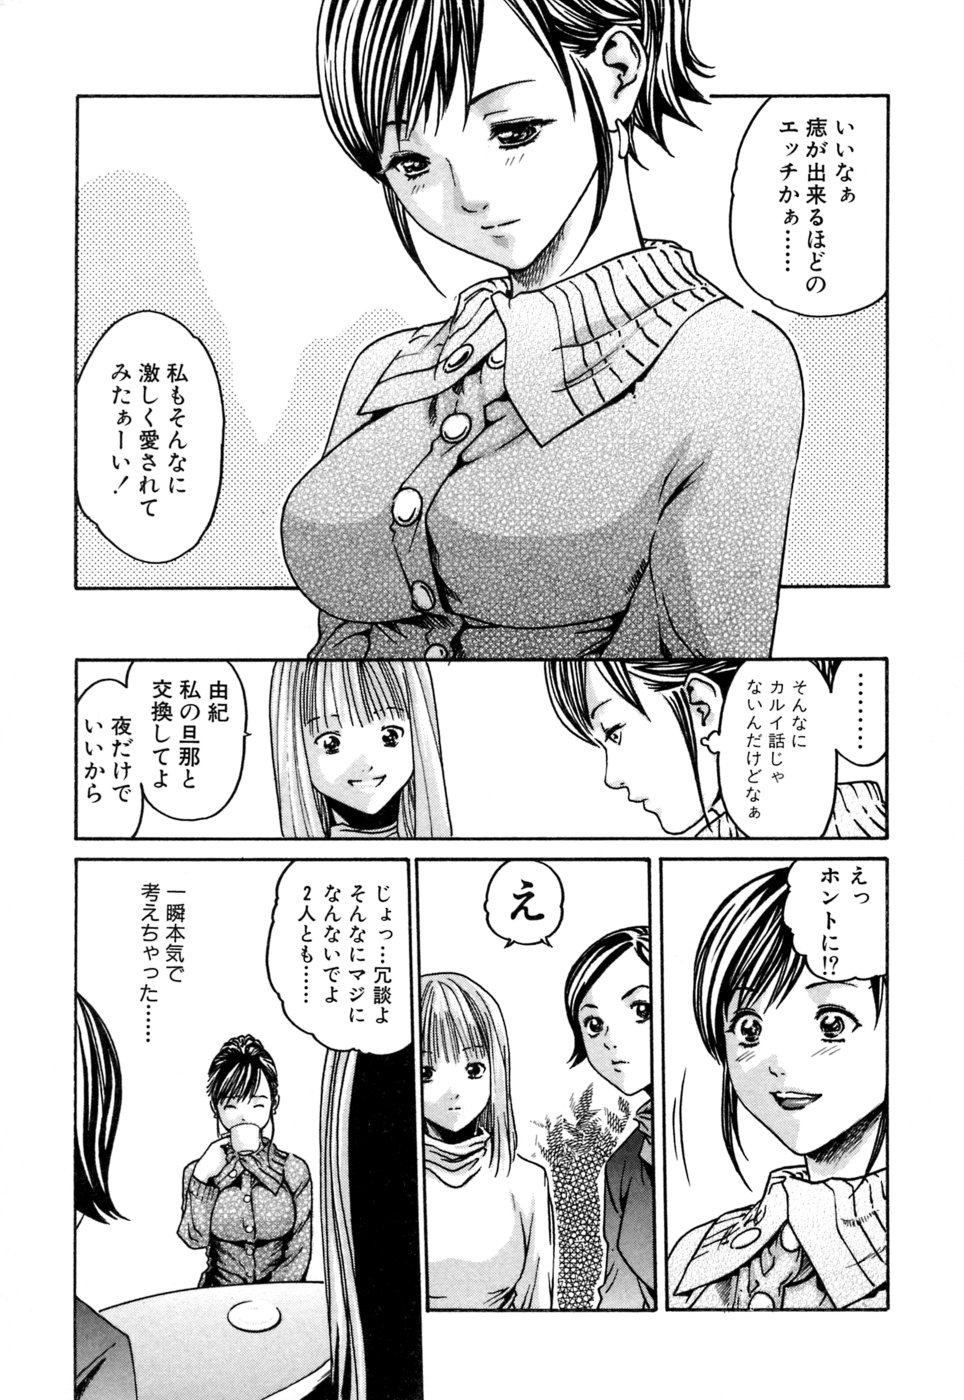 [Haruki] Kisei Juui Suzune 1 page 35 full